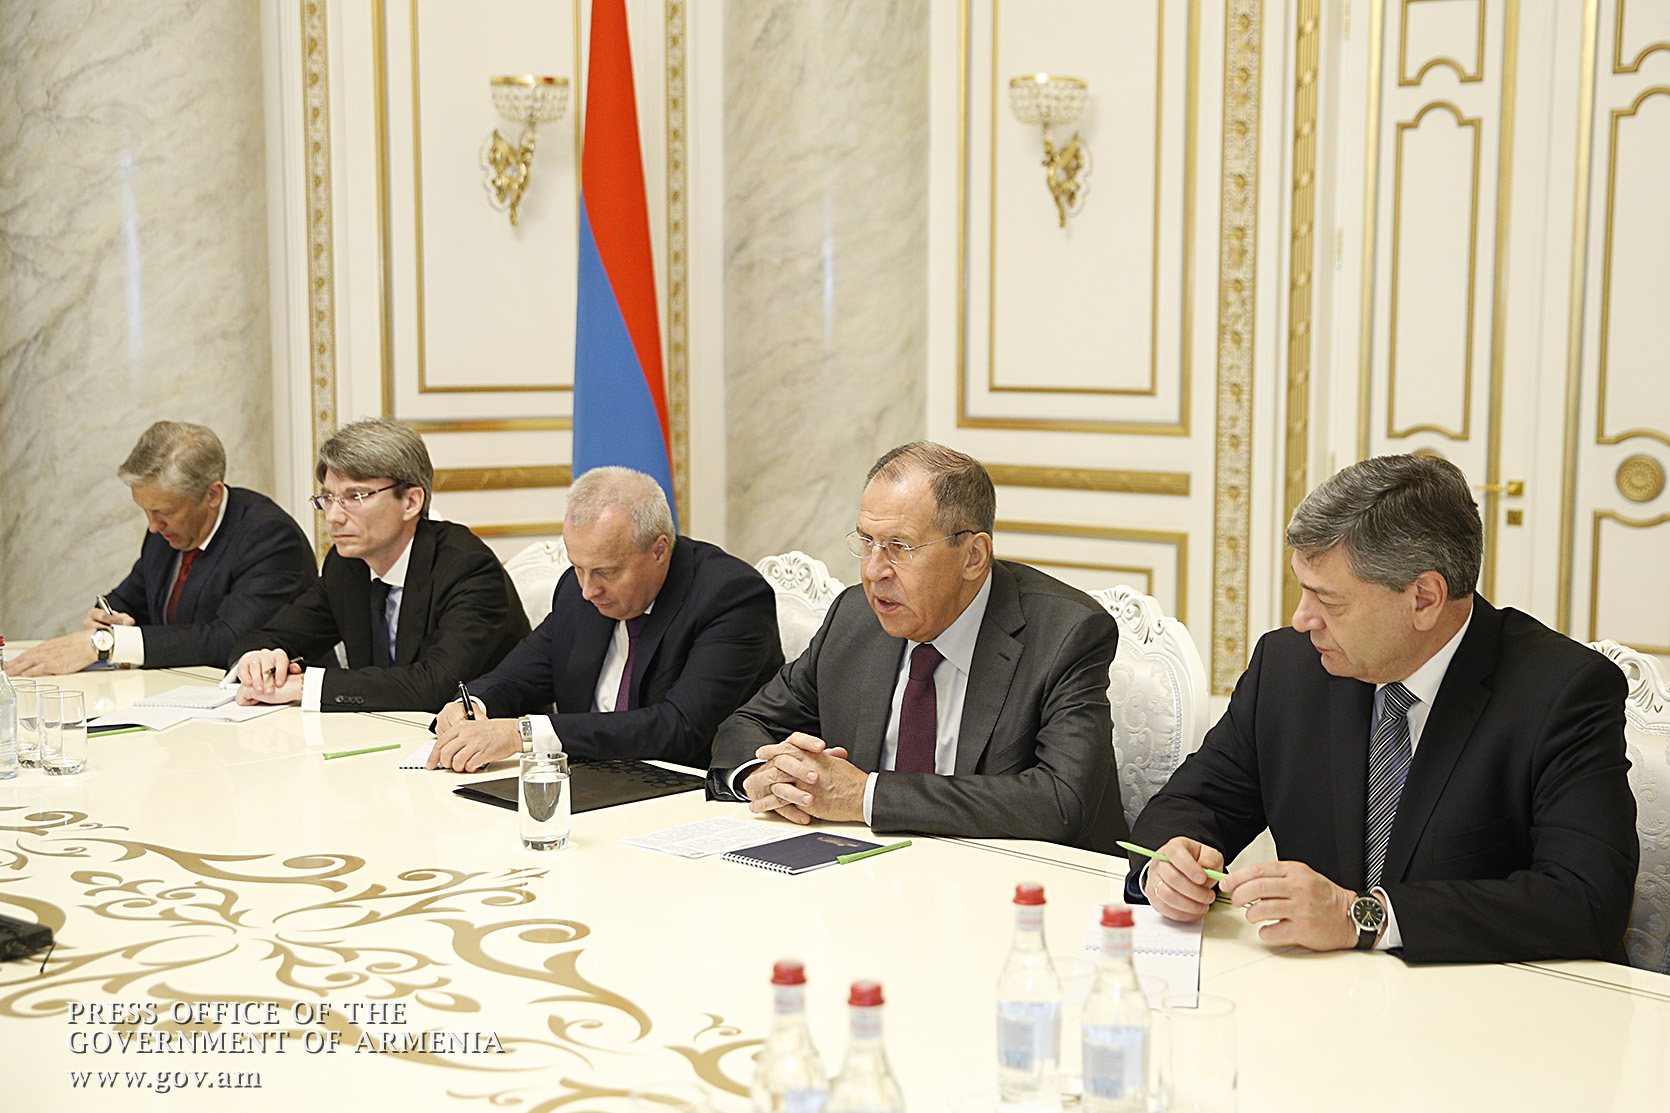 Сергей Лавров: Без согласия народа Карабаха никакие договоренности оформить будет невозможно 